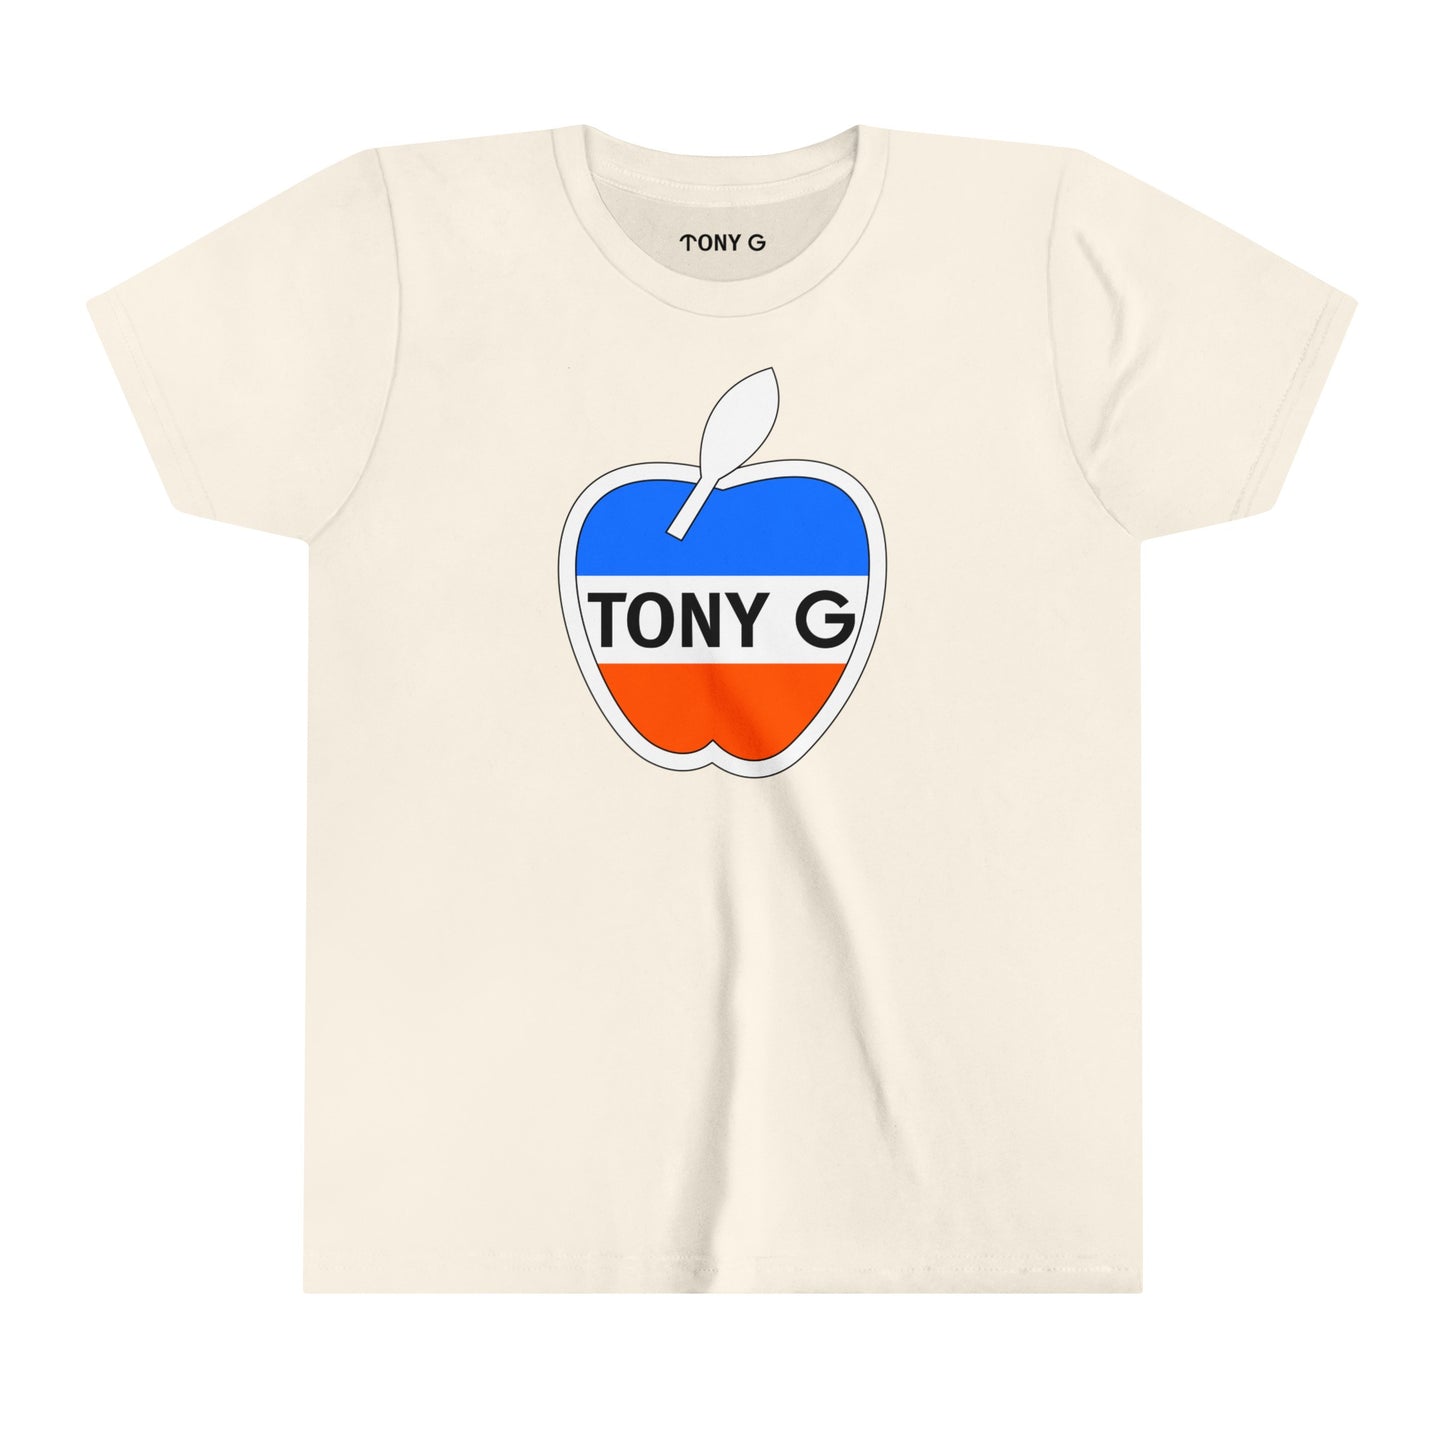 TONY G Youth Short Sleeve Tee, featuring the TONY G Apple design